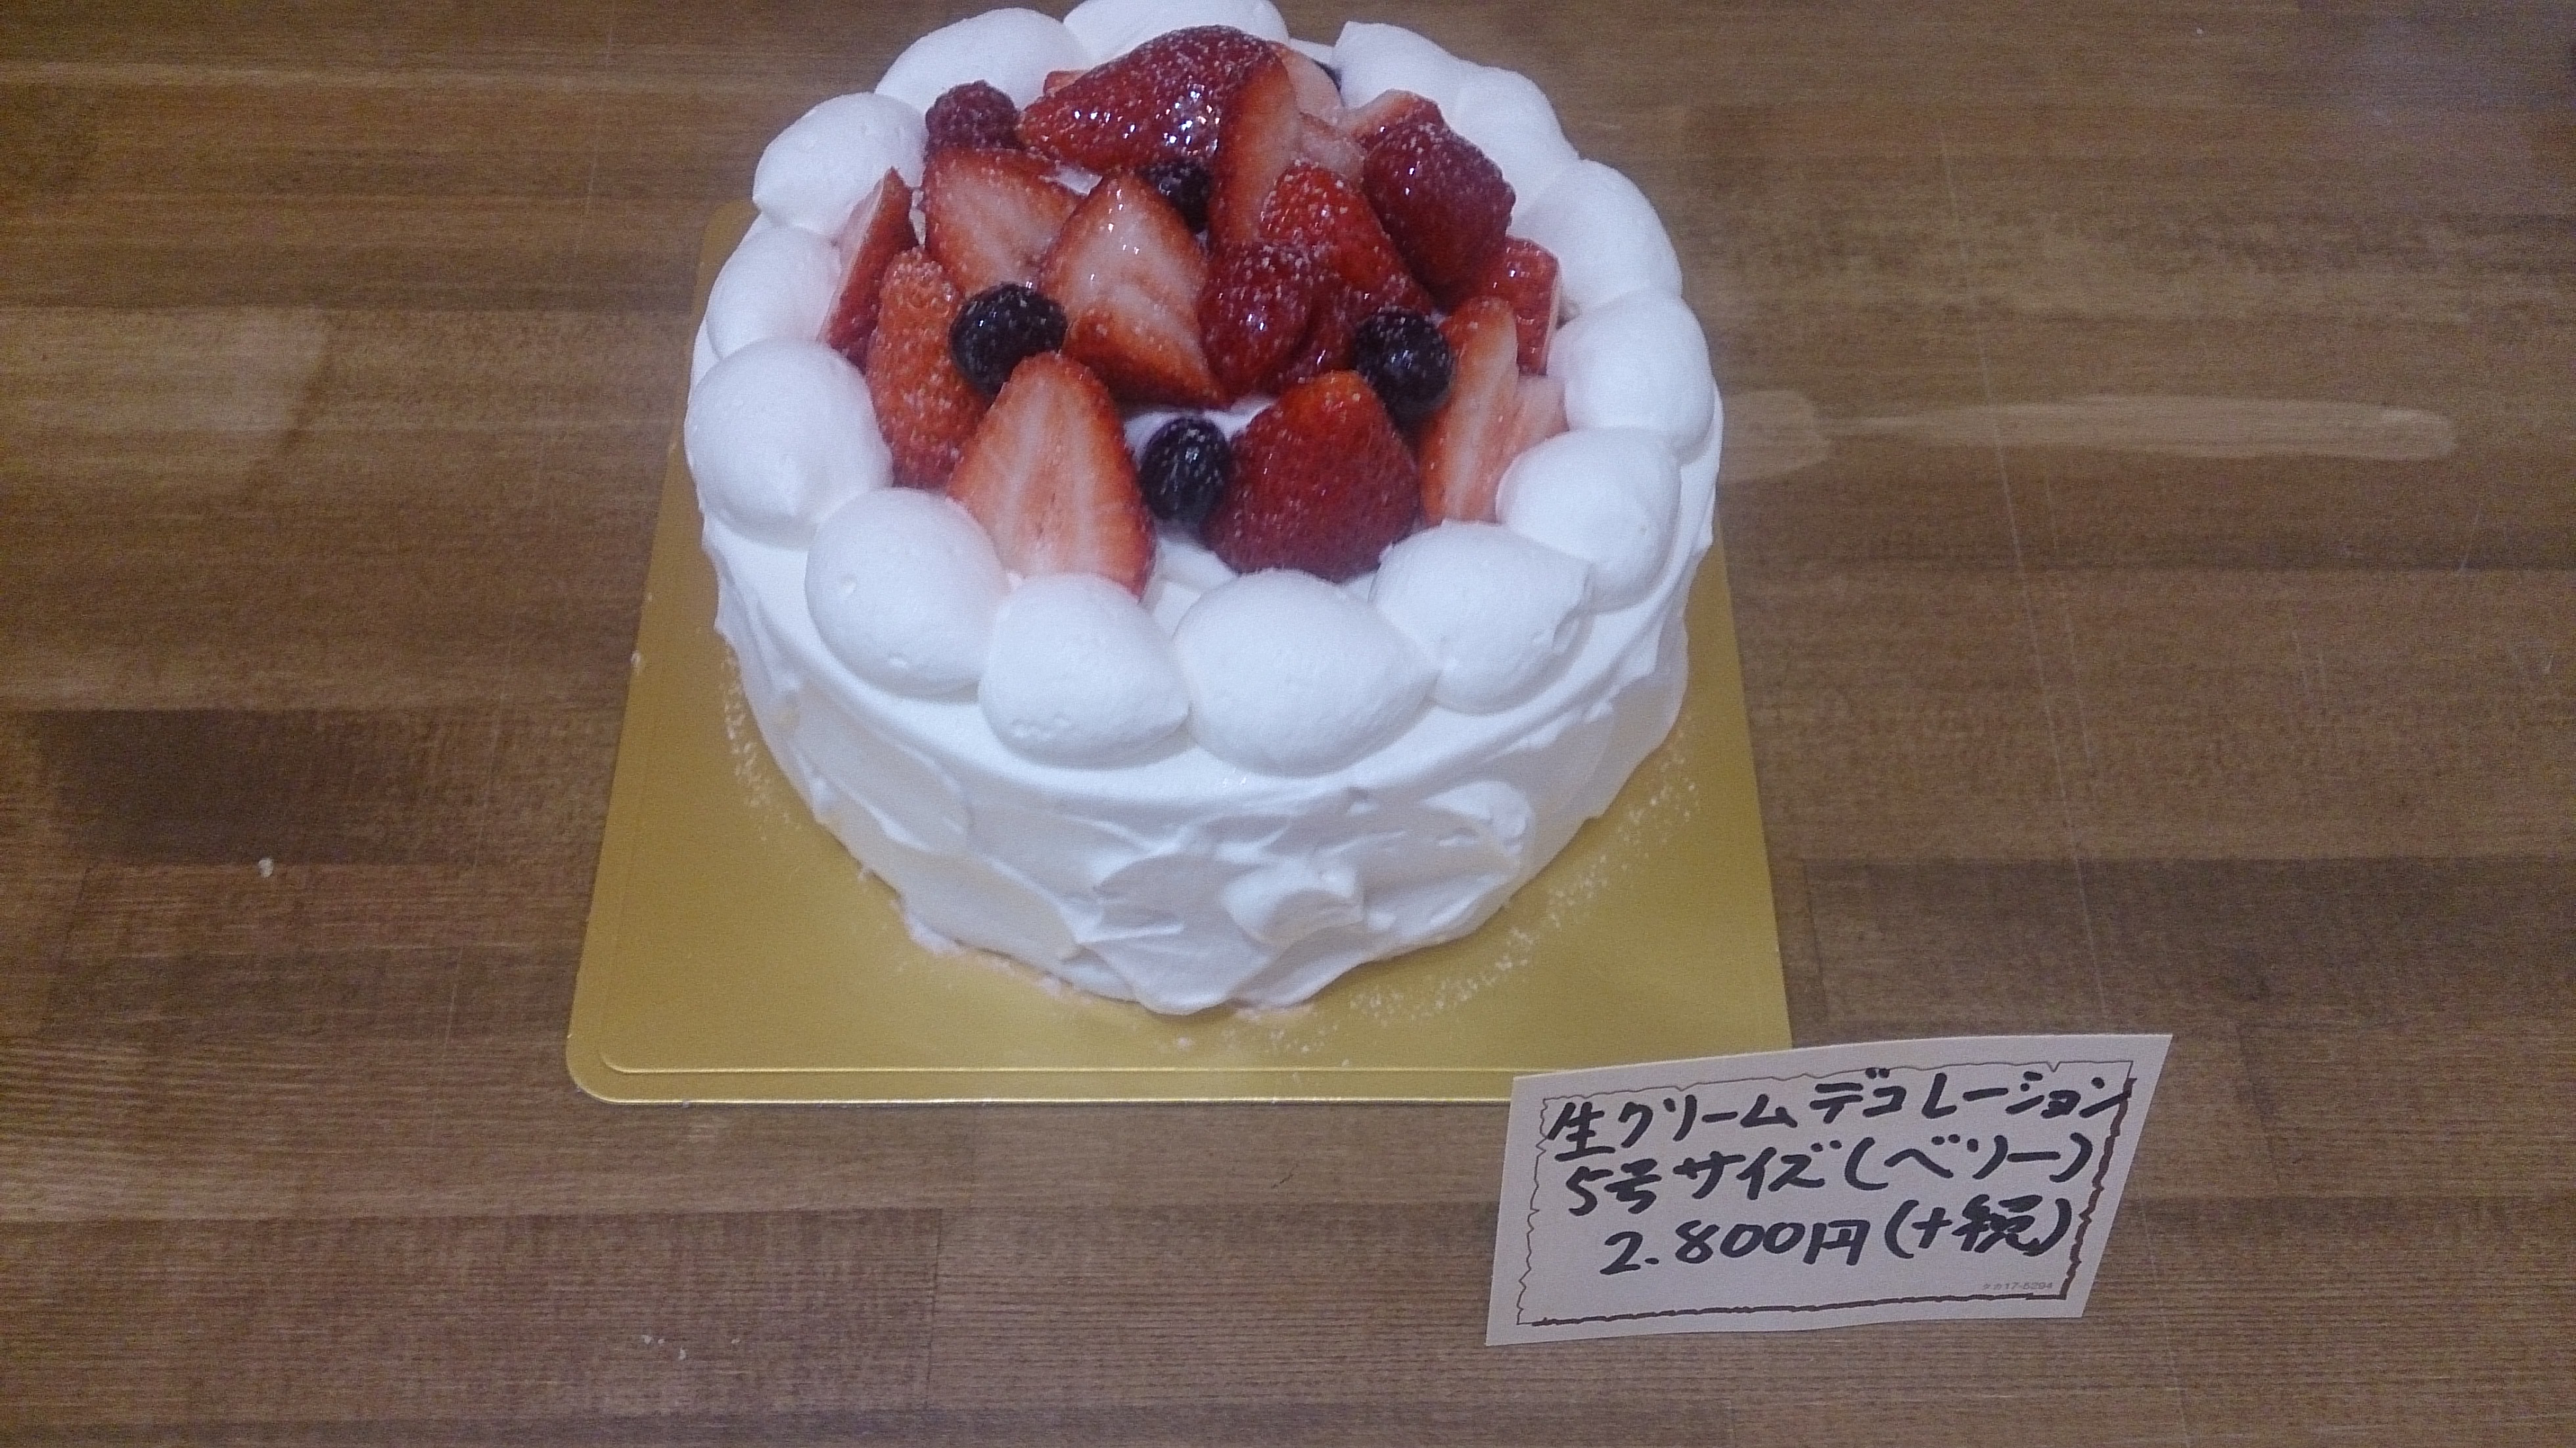 堺でおいしいケーキを販売しているお店のデコレーションケーキ 堺でケーキならお菓子のお家トリジとリスバ